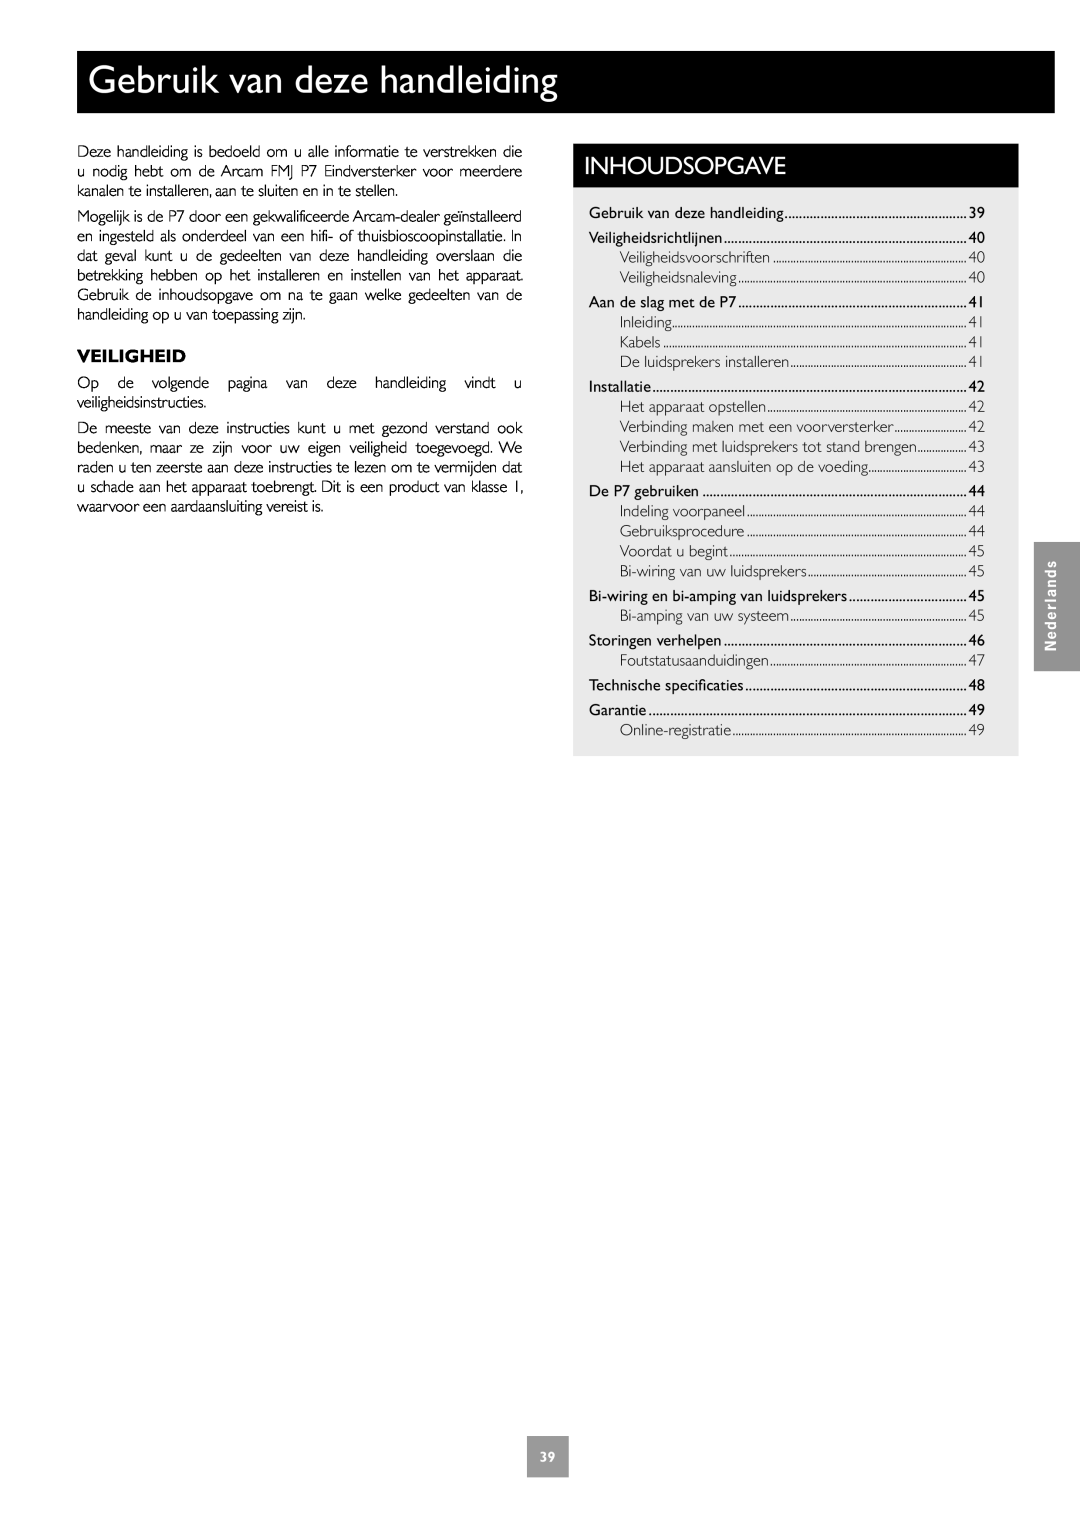 Arcam Multichannel Power Amplifier manual Inhoudsopgave, Veiligheid, Gebruik van deze handleiding, Nederlands 